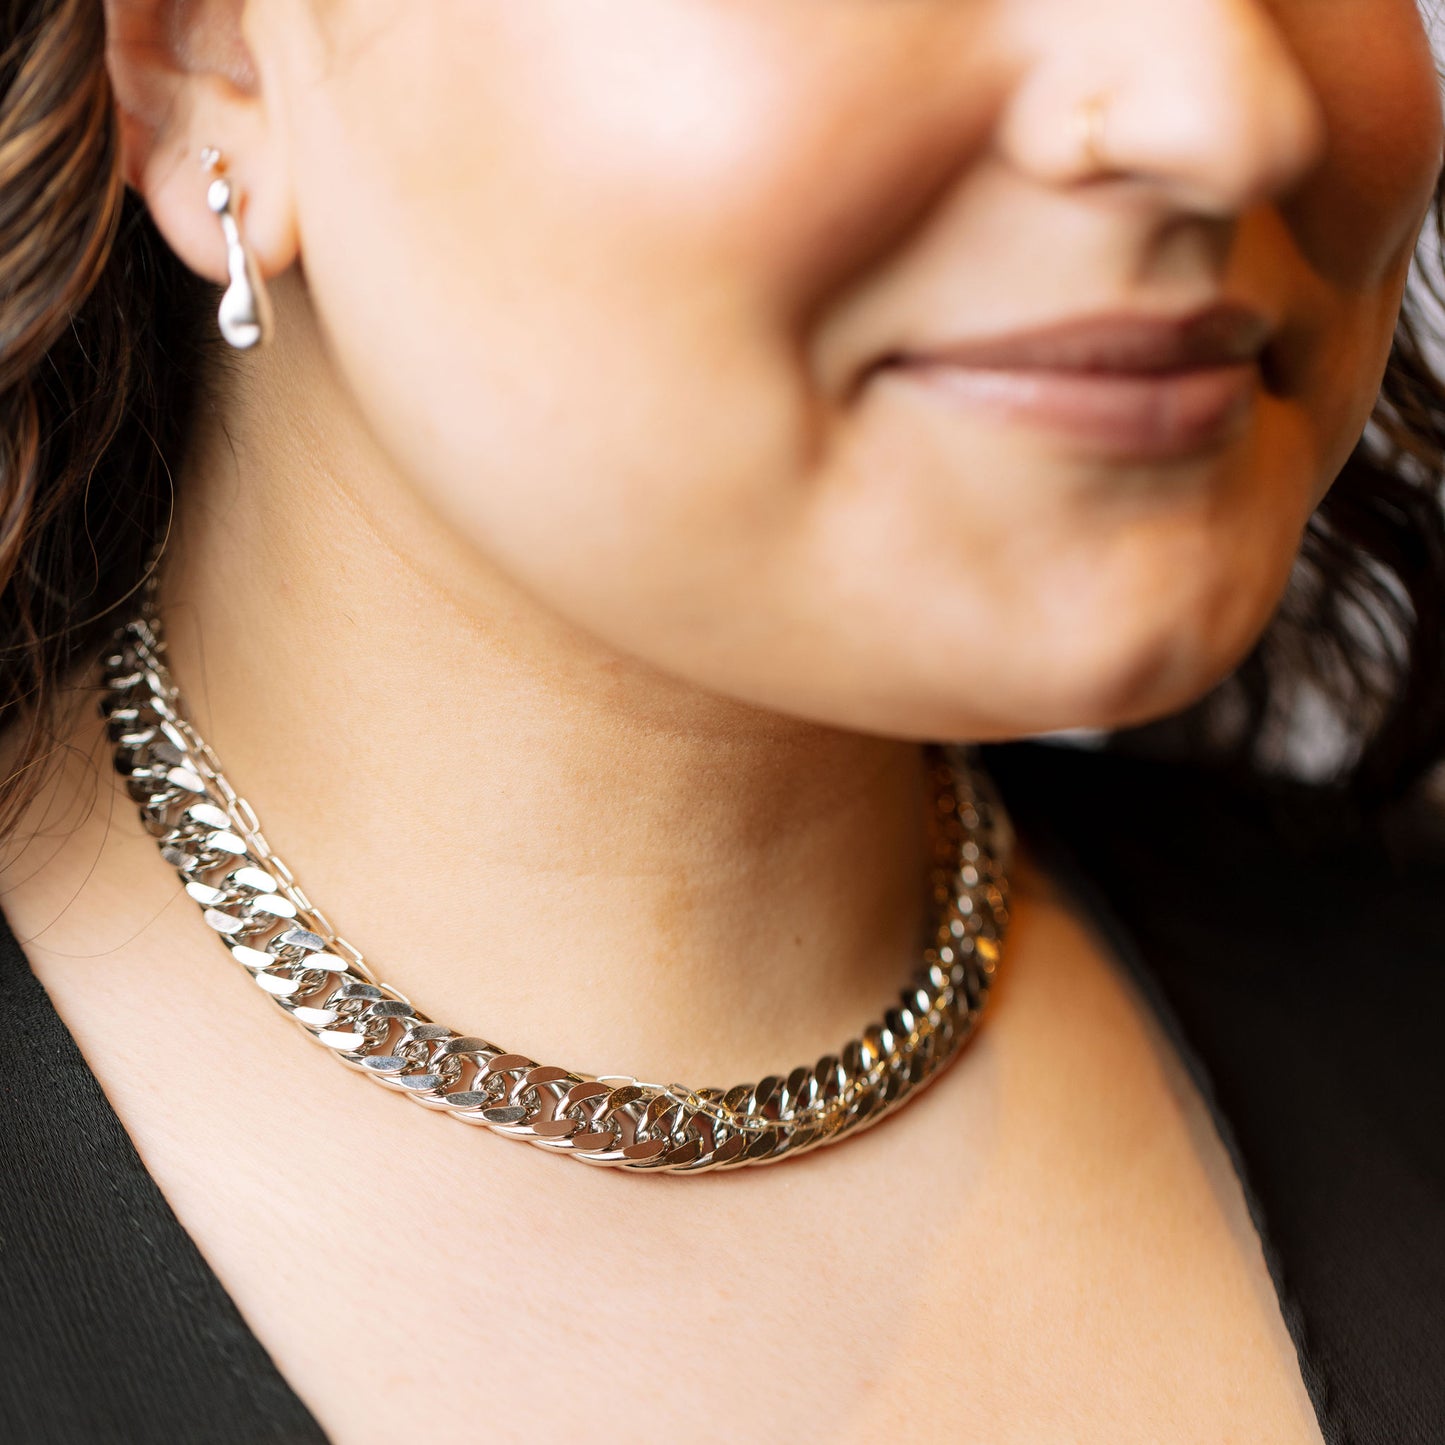 Arya necklace on model